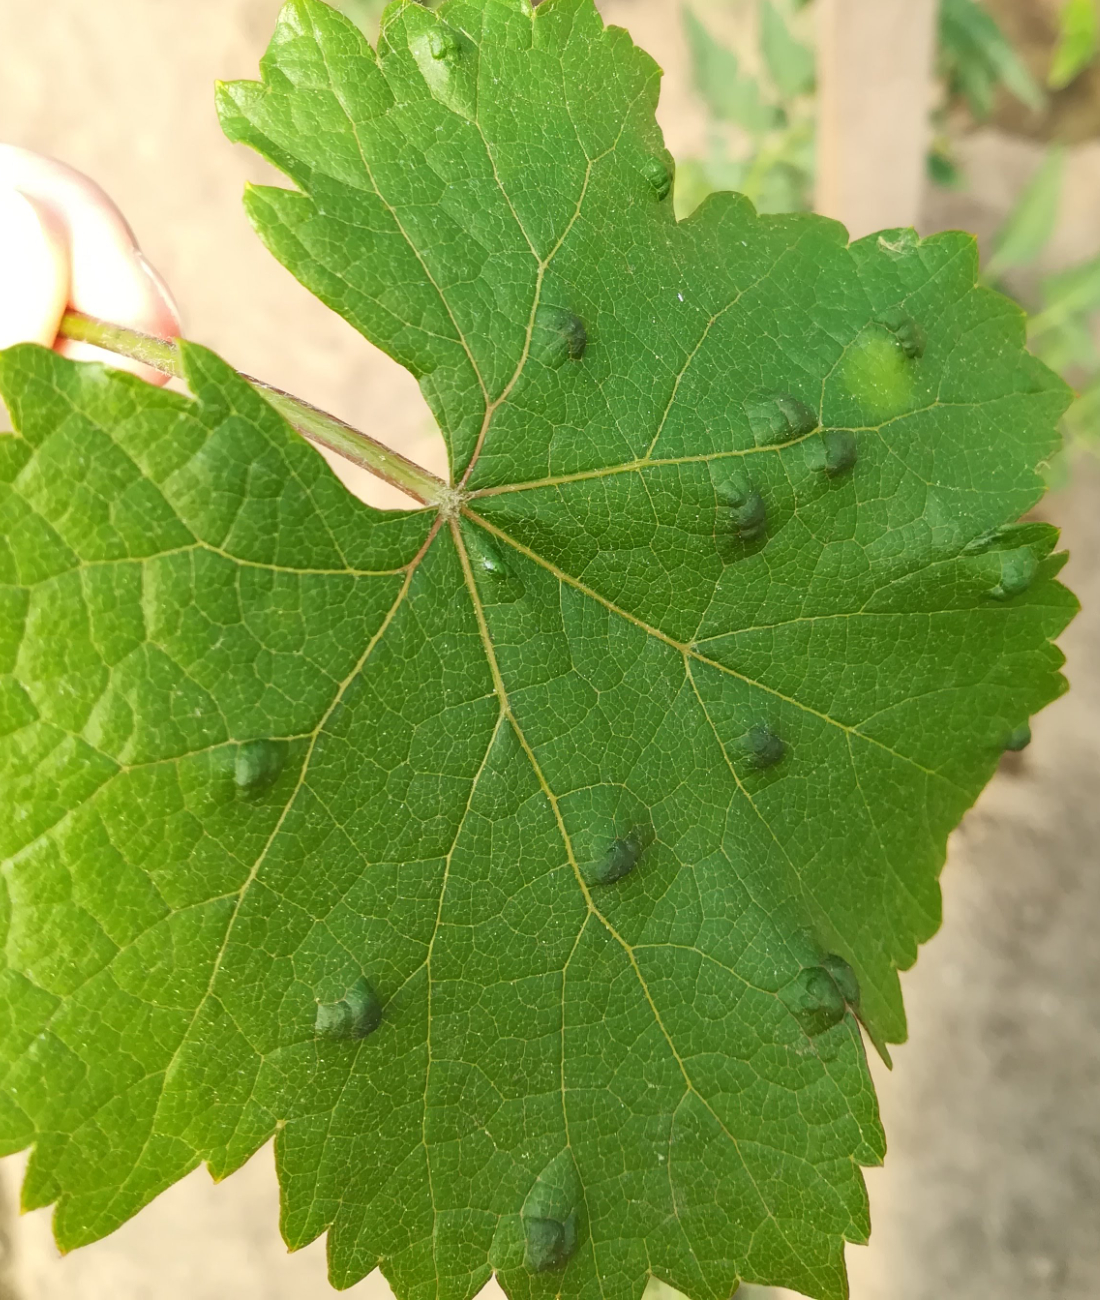 Az atka kártevők közül a szőlő-gubacsatka különösen veszélyes. Mit kell tudni az atka kártételéről?